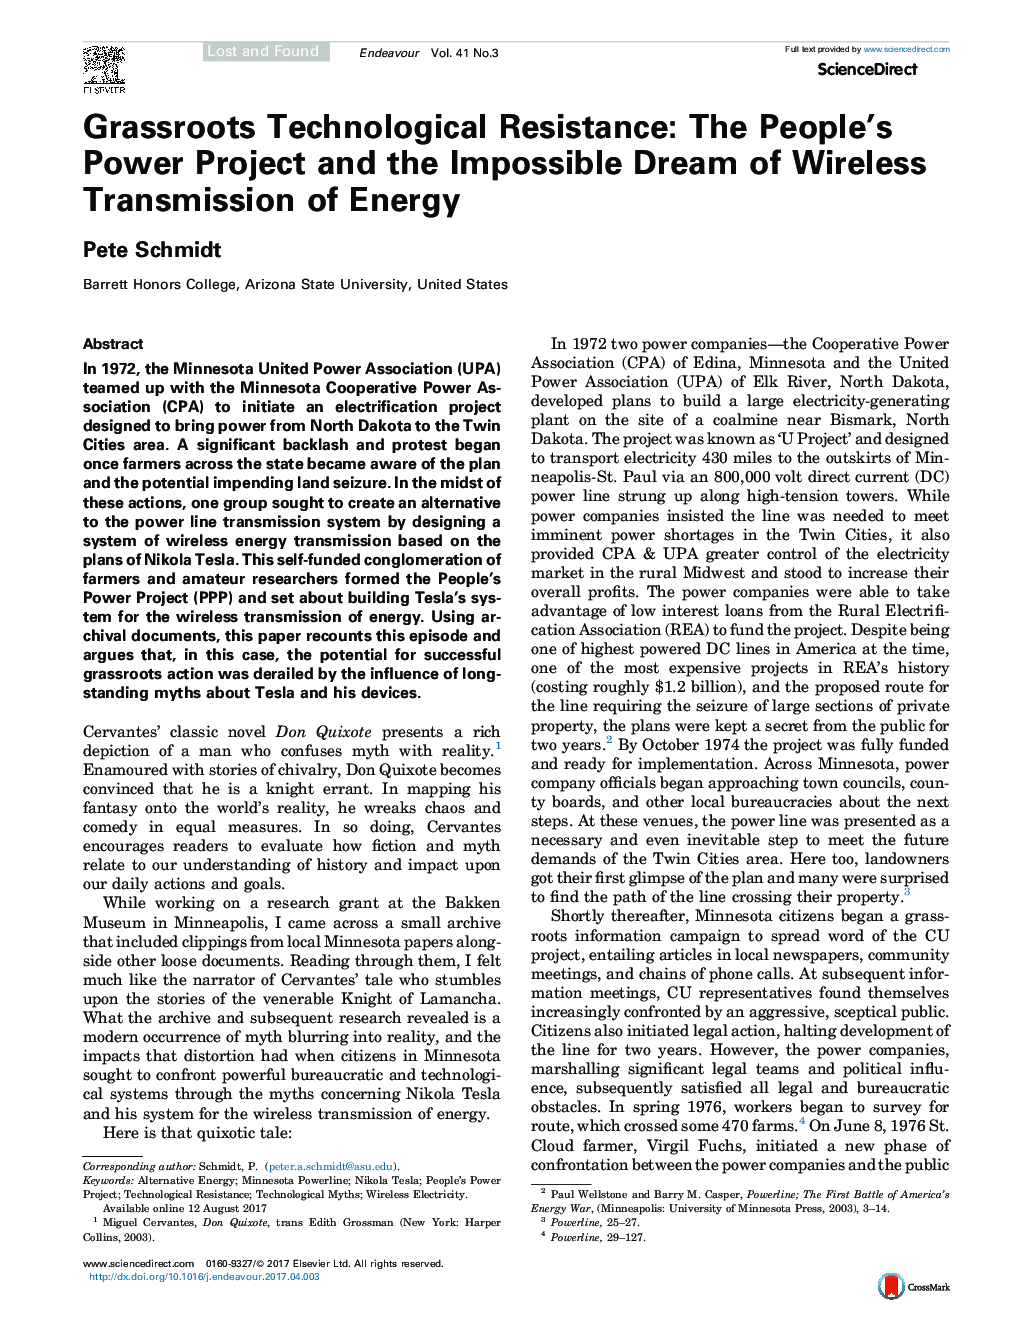 مقاومت تکنولوژیکی مردمی: پروژه قدرت مردم و رویای غیرمنتظره انتقال بی سیم انرژی